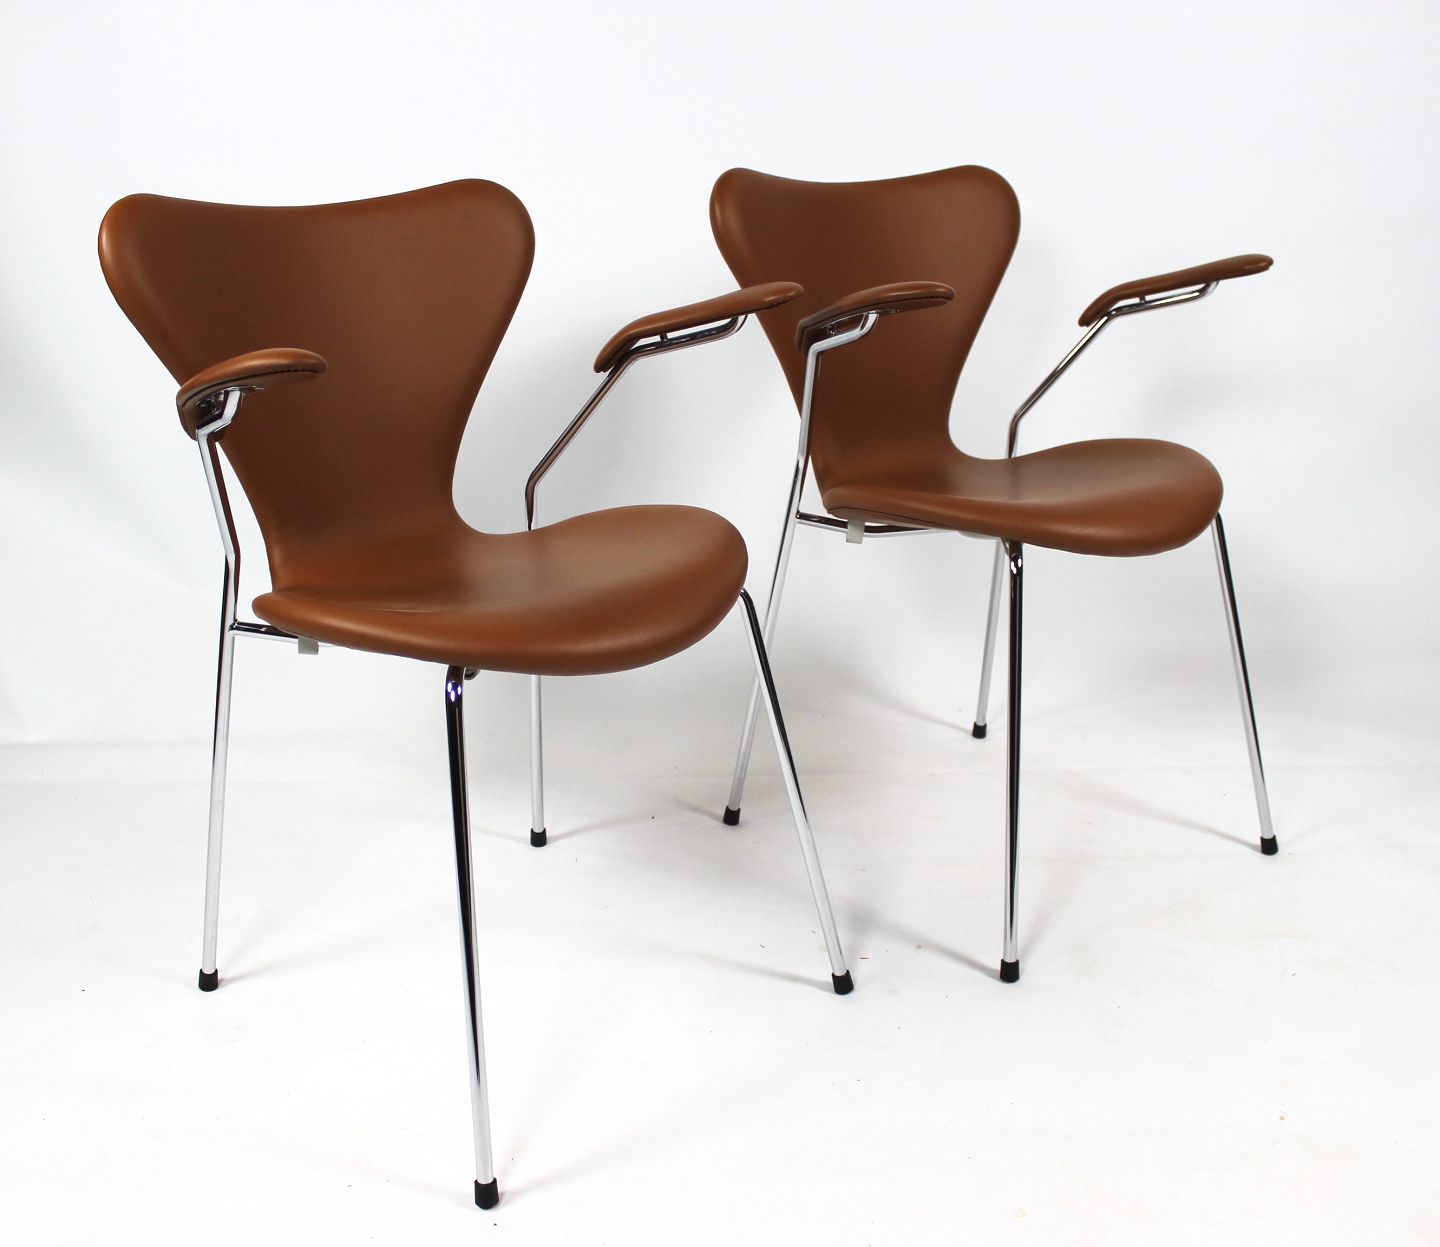 ophavsret Vandre afrikansk Et sæt af syver stole, model 3207, med armlæn i cognac farvet læder af Arne  Jaco - Osted Antik & Design